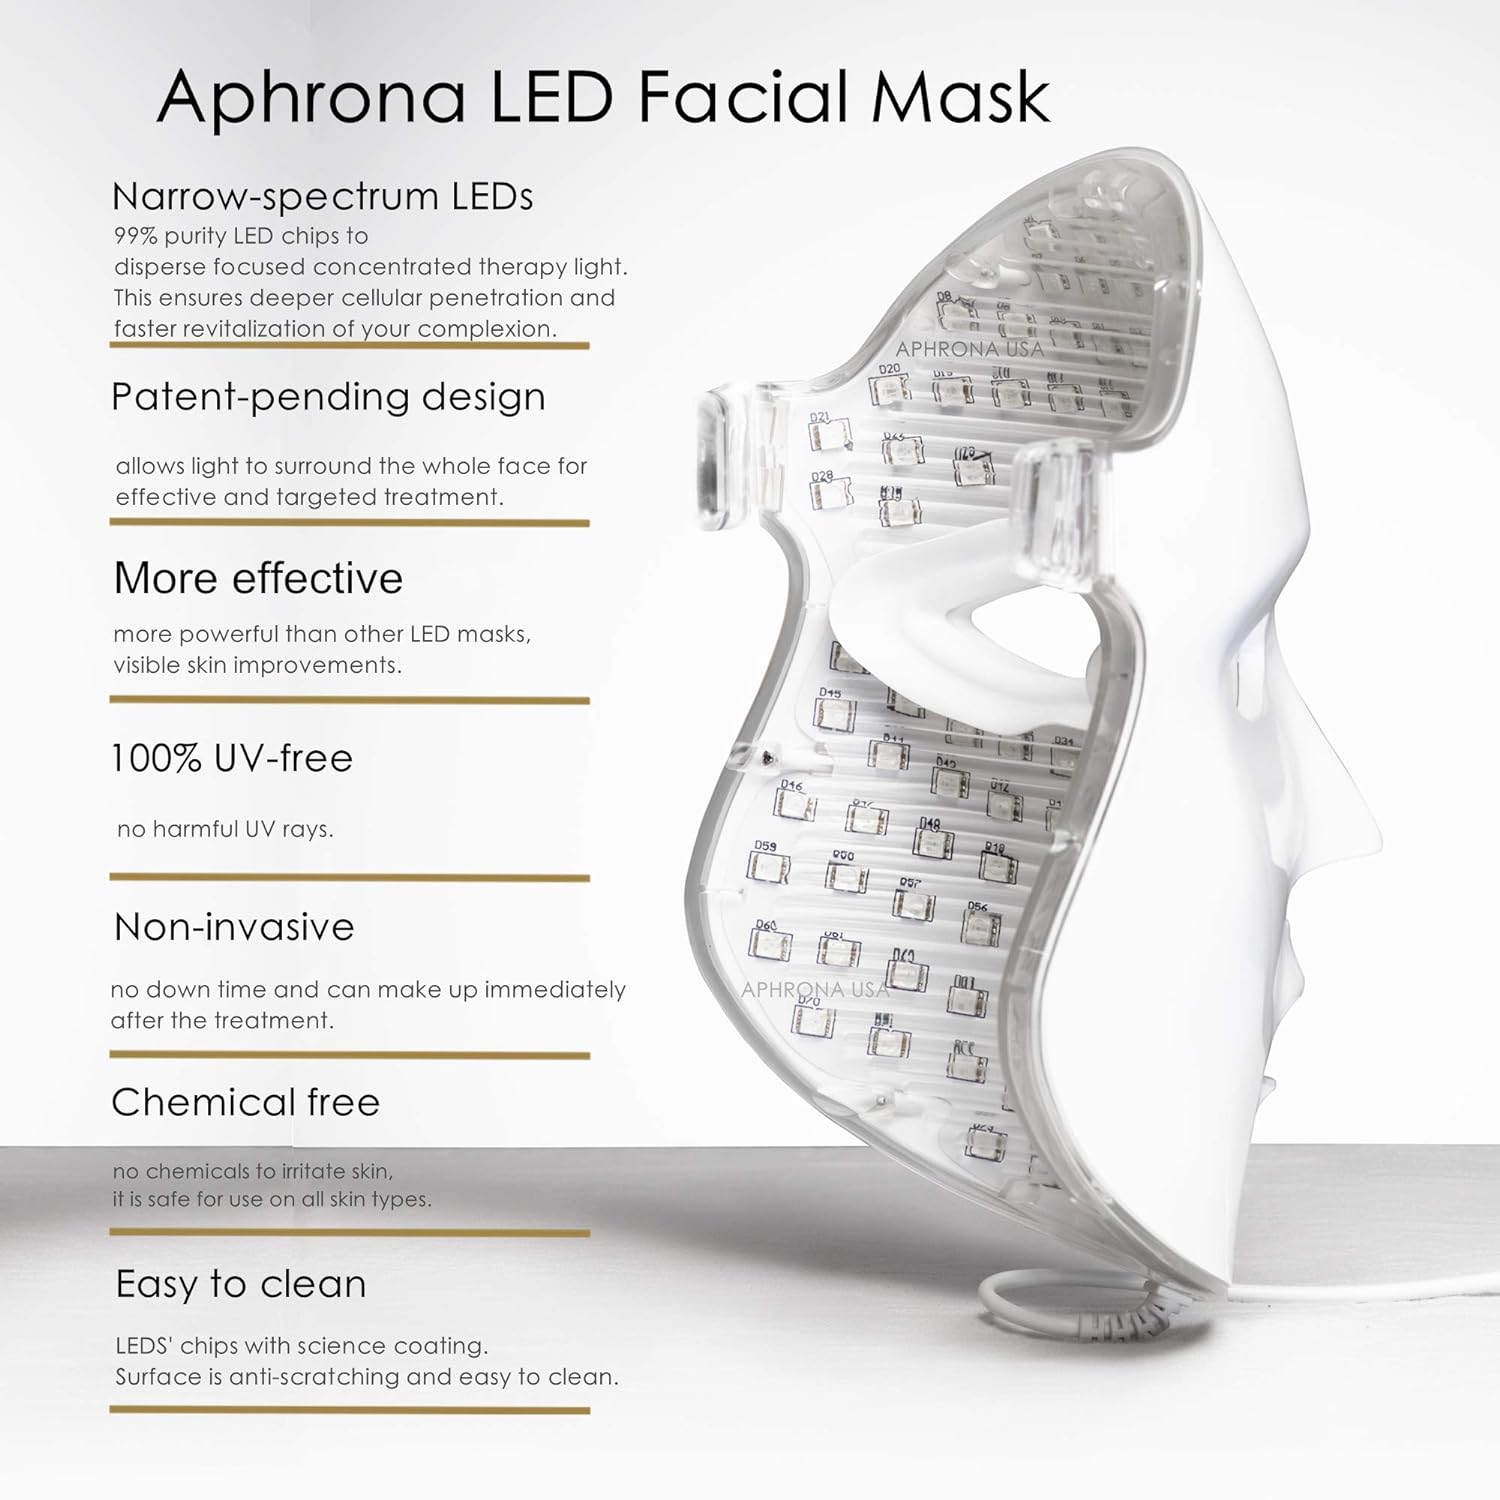 Aphrona FDA cleared LED Facial Skin Care Mask MOONLIGHT PRO 7 Color Treatment Photon Mask (White)